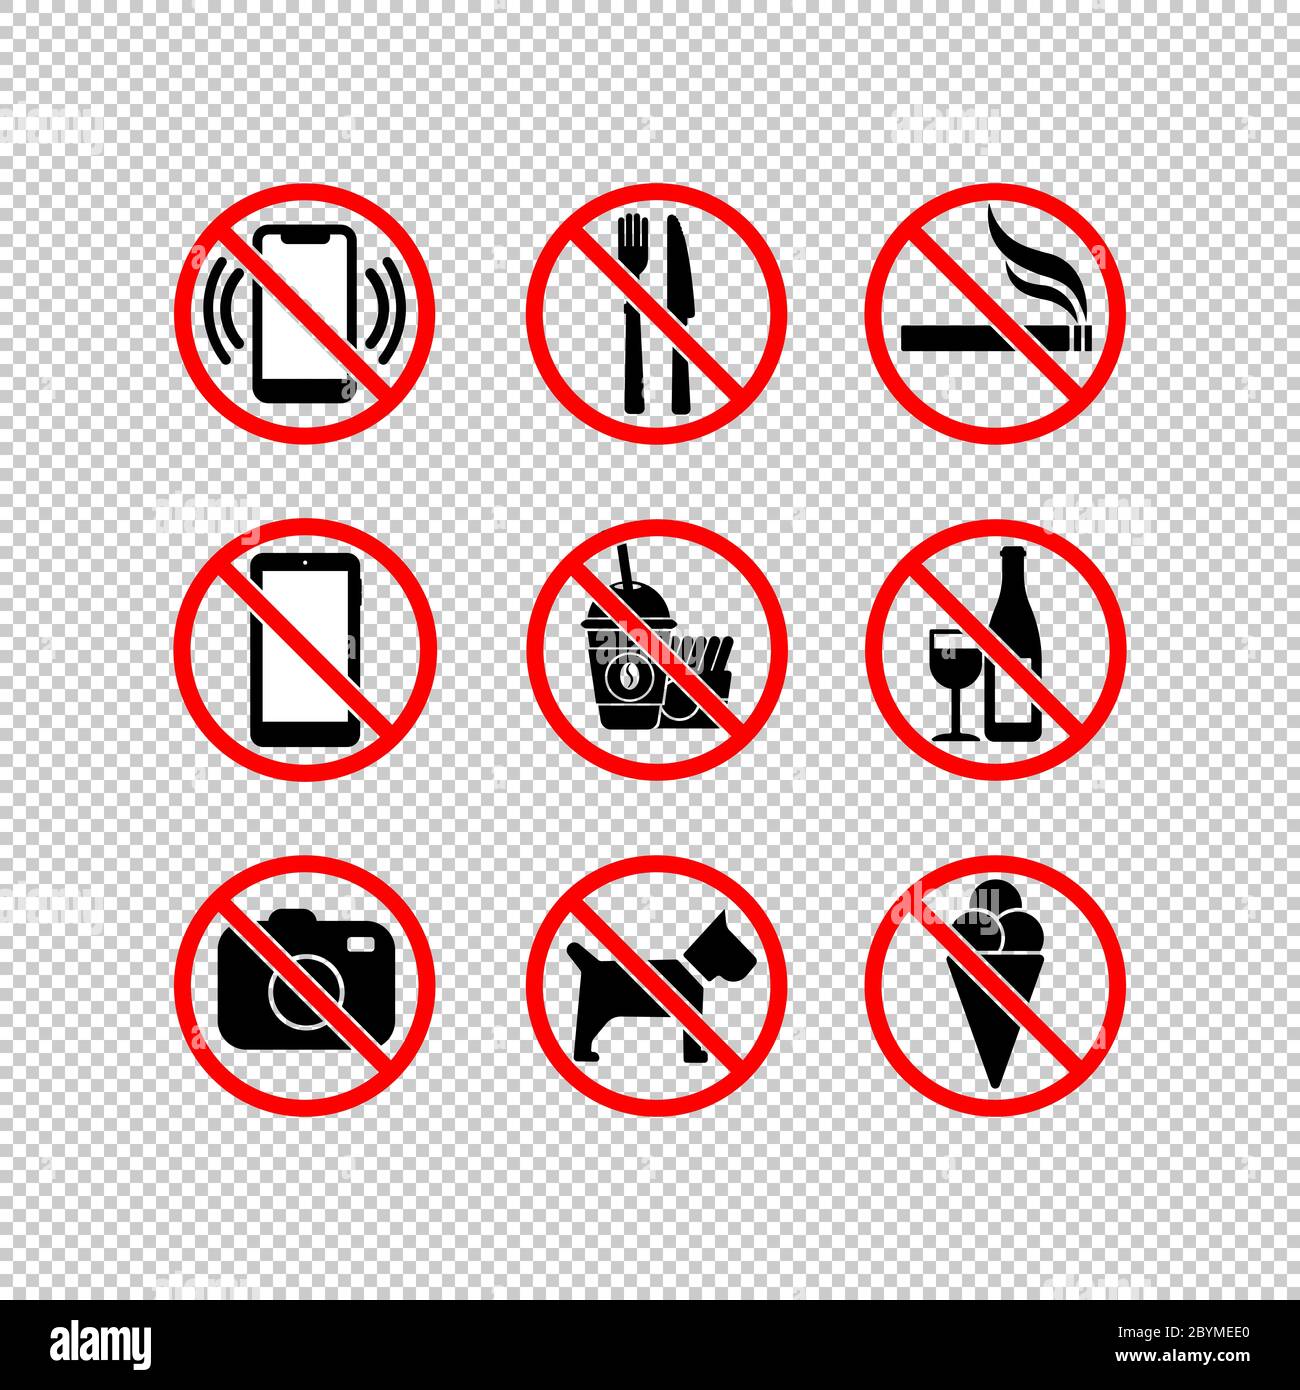 Kein Handy, keine Kamera, Eis, Rauchen aufhören, essen, keine Hunde, kein Alkohol trinken, Fast-Food-Symbol in schwarz und rot gesetzt. Unzulässiges Symbol einfach ein Stock Vektor